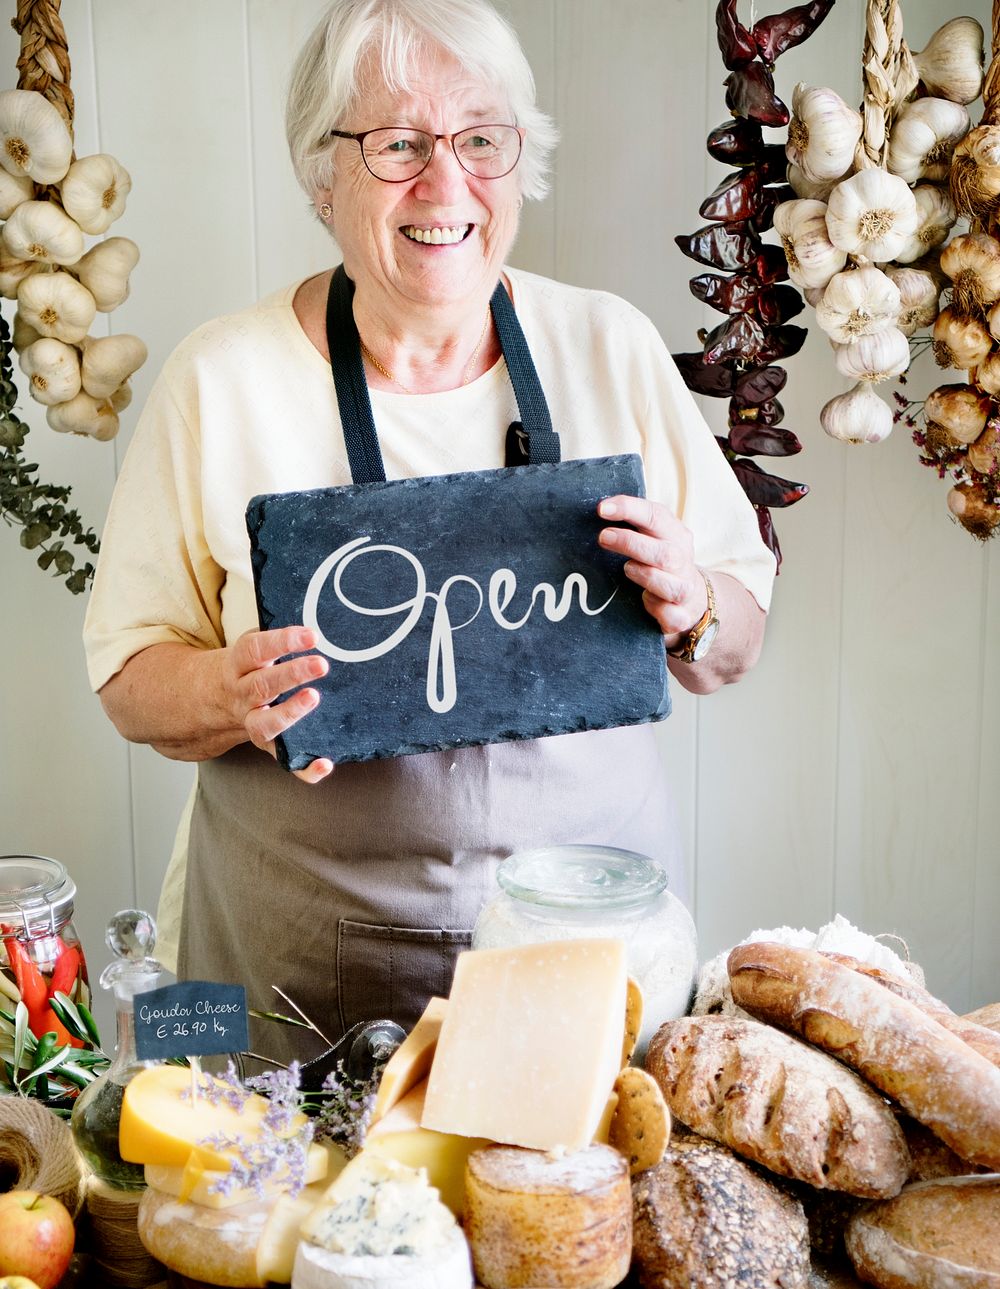 Elderly woman holding an open sign